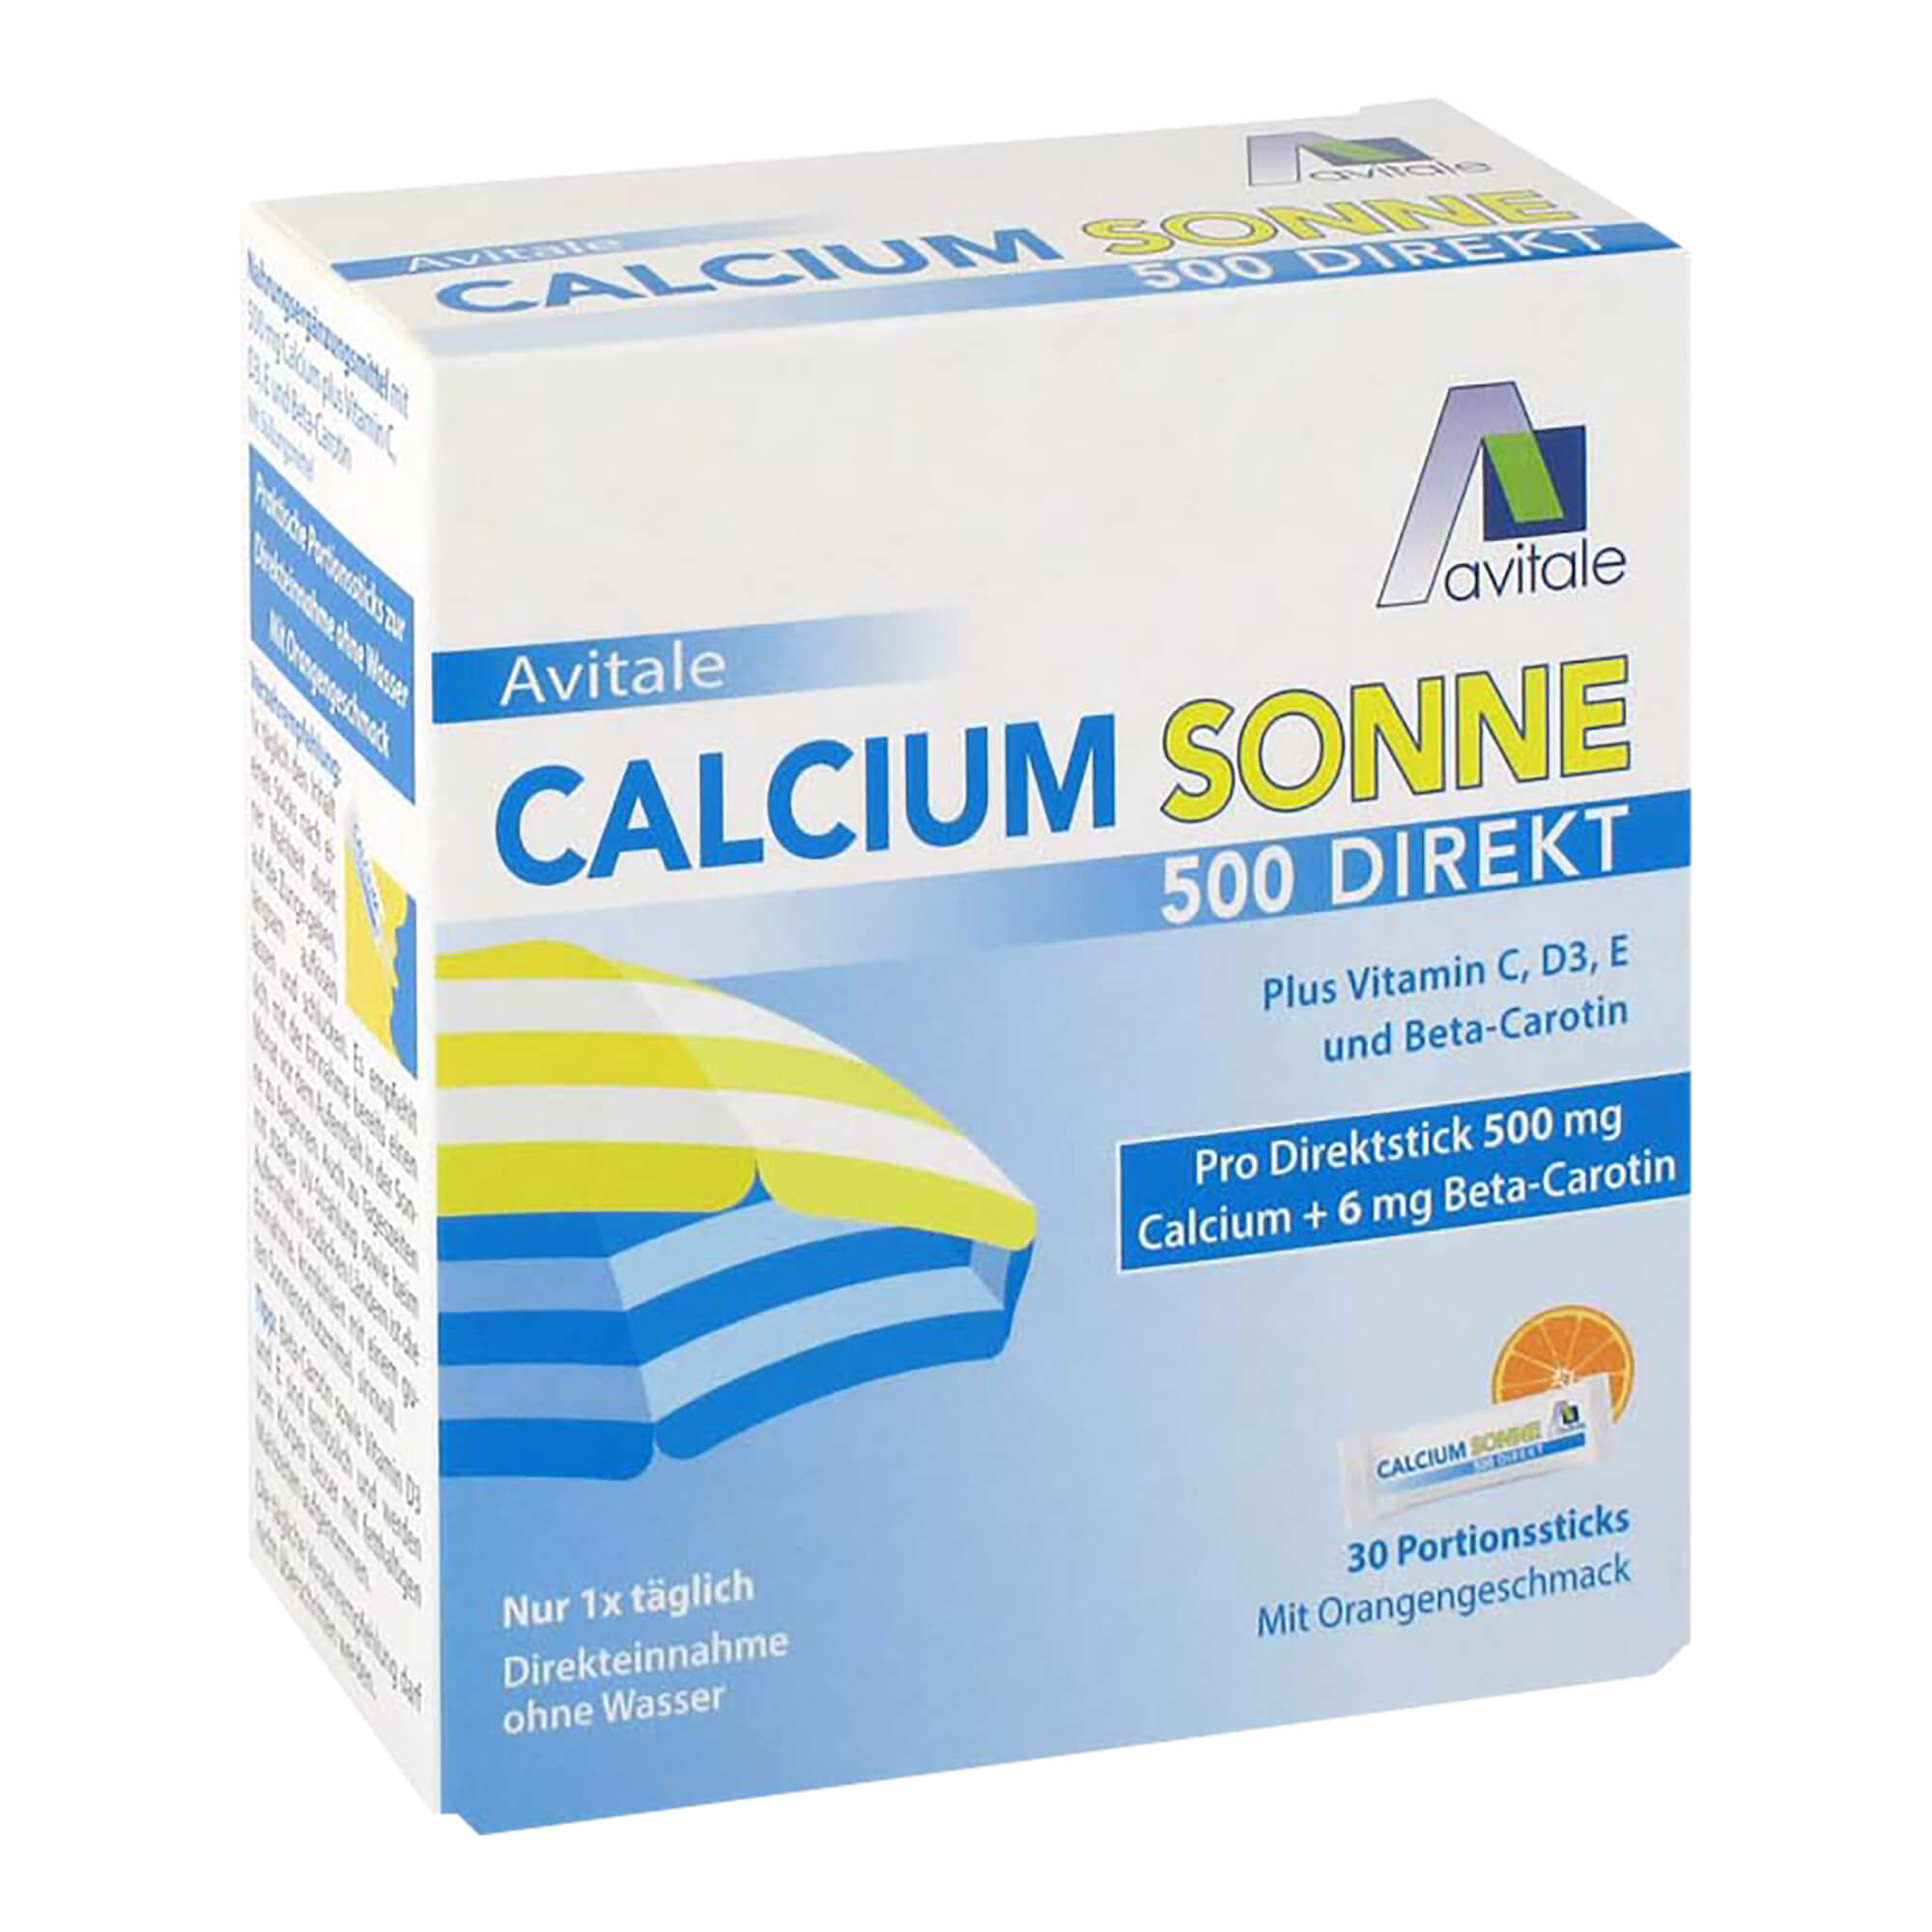 Nahrungsergänzung mit Calcium plus Vitamin C, D3, E und Beta-Carotin. Mit Orangengeschmack.